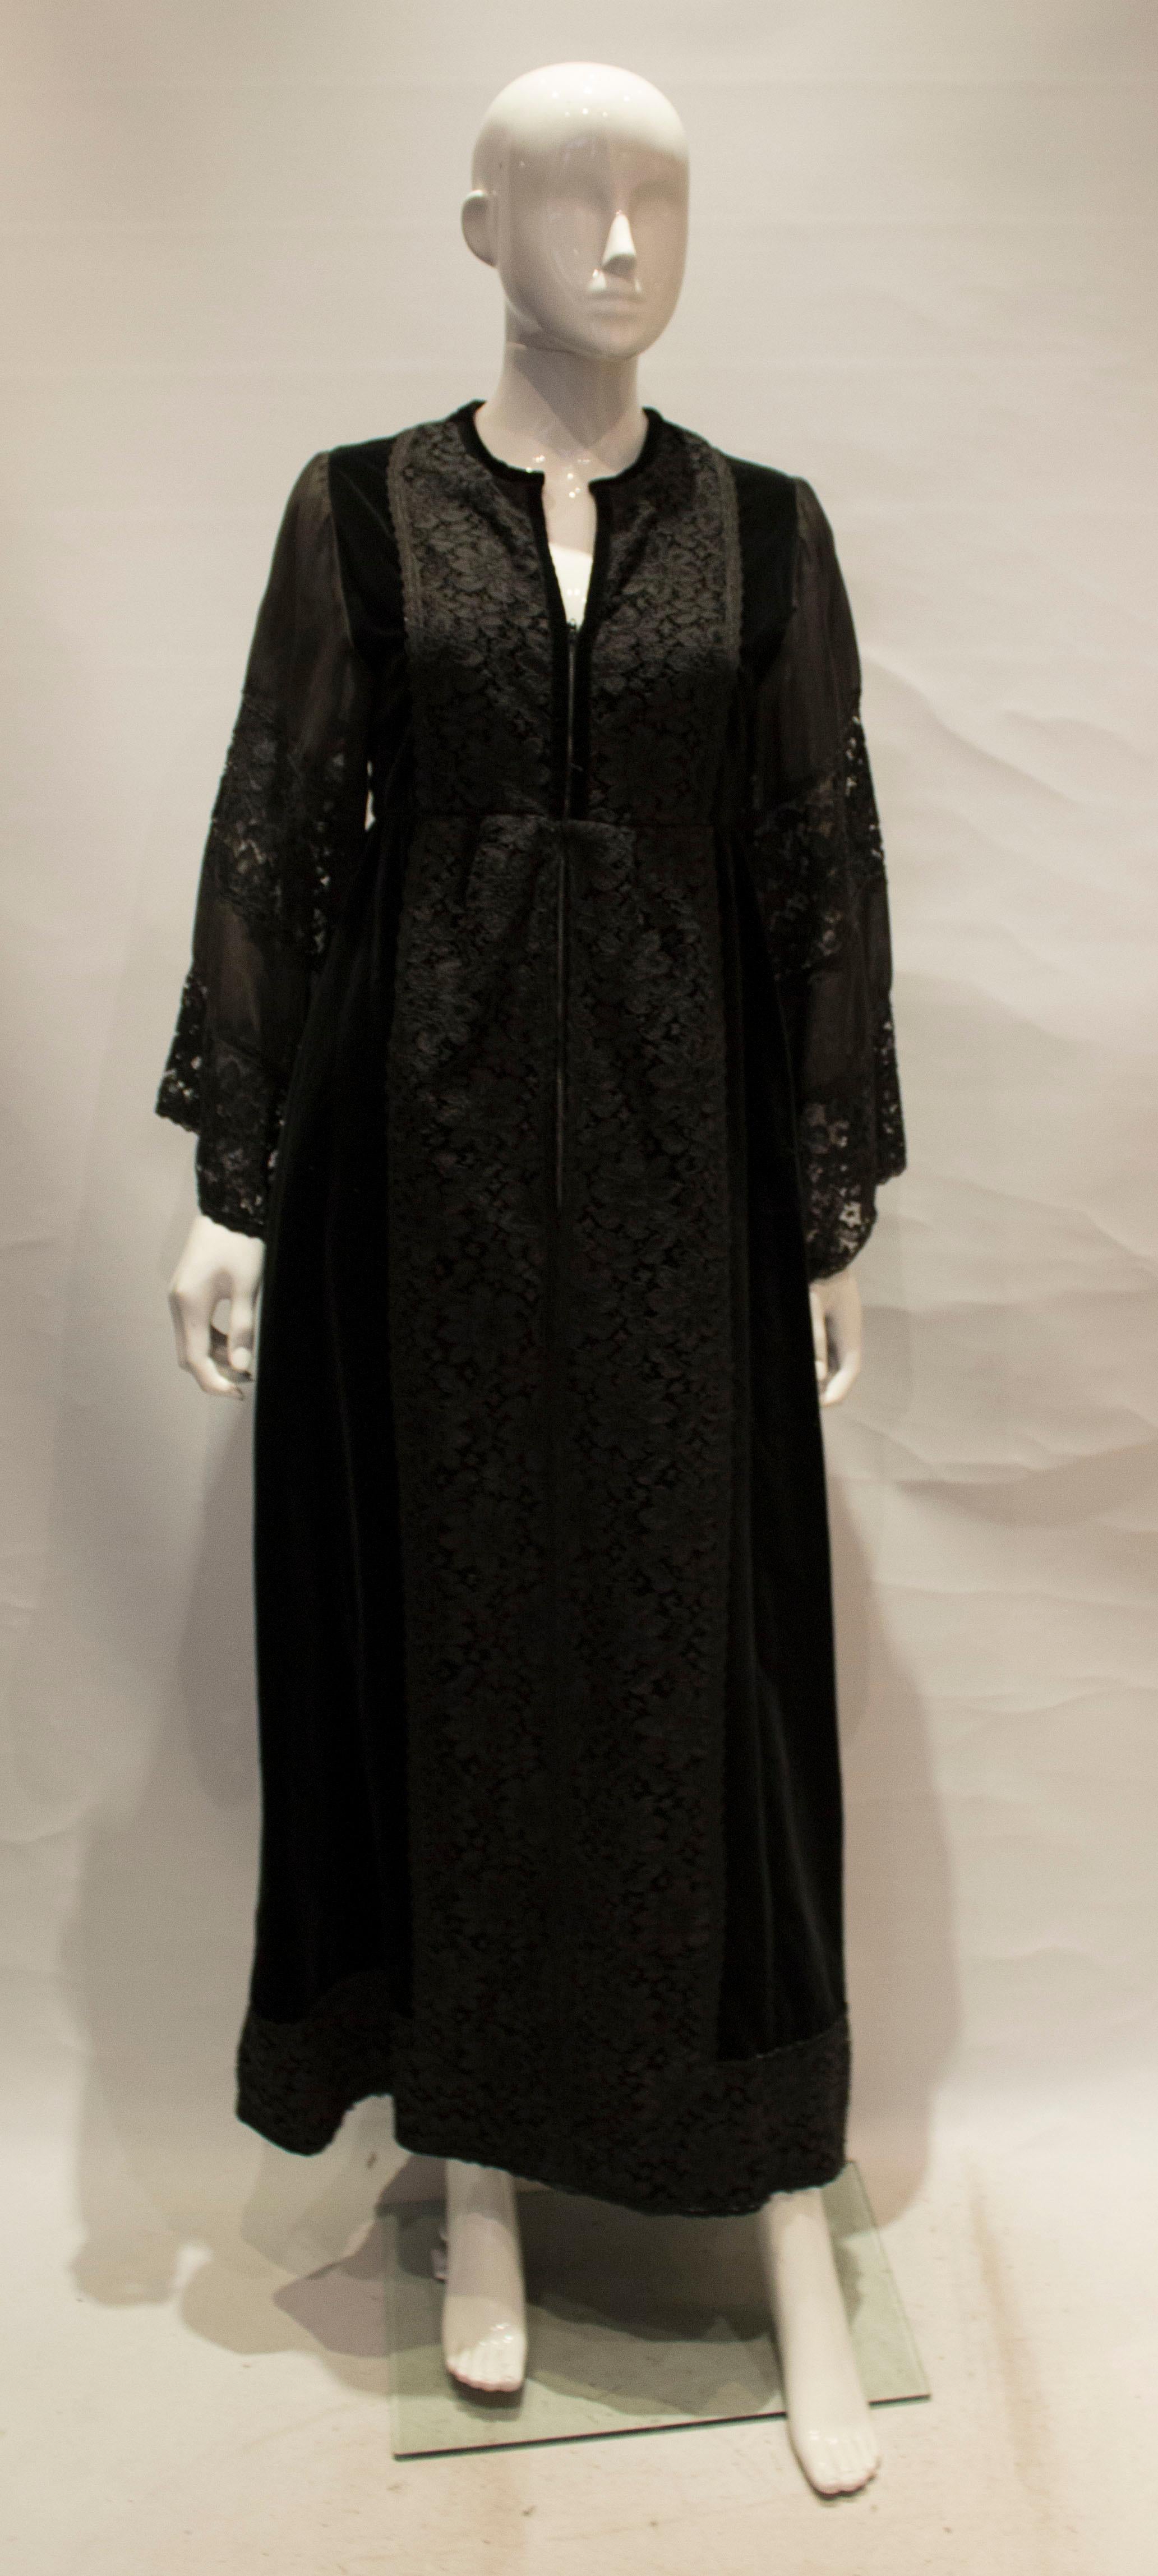 Une superbe robe vintage pour l'automne par Angela Gore. La robe a un décolleté en V, avec des panneaux en velours et en dentelle, une ouverture zippée sur le devant et est entièrement doublée.